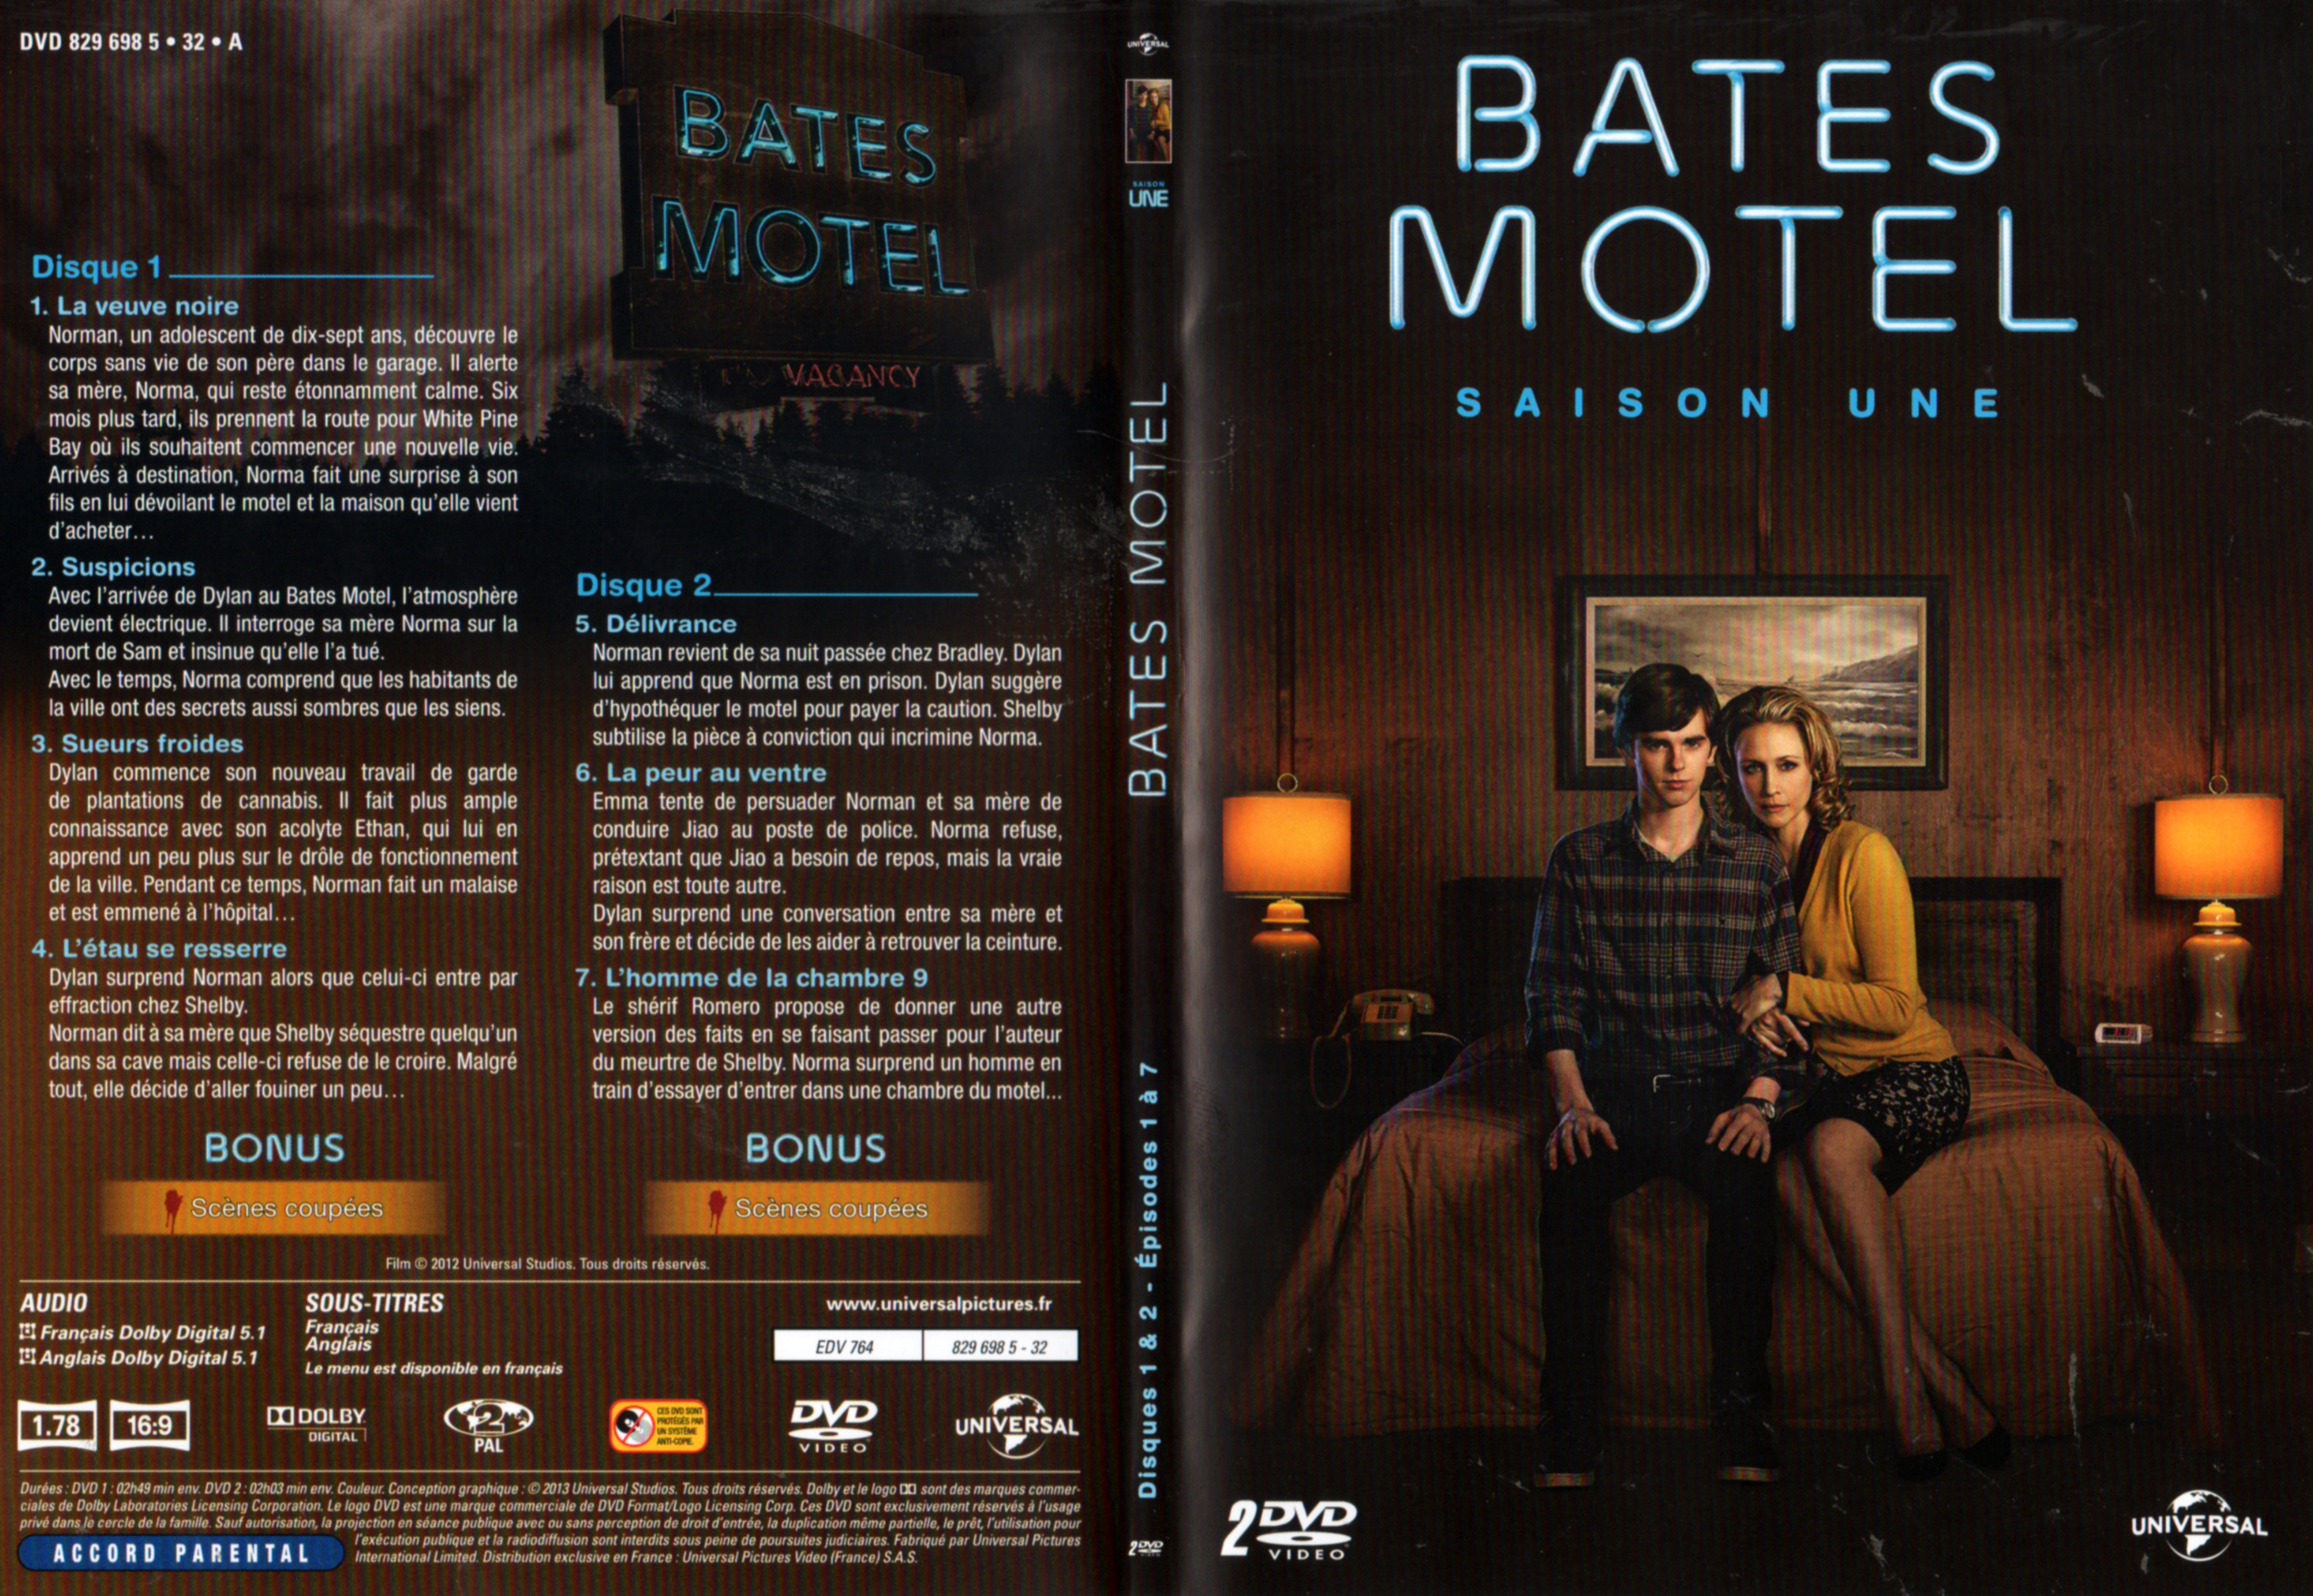 Jaquette DVD Bates motel Saison 1 DVD 1